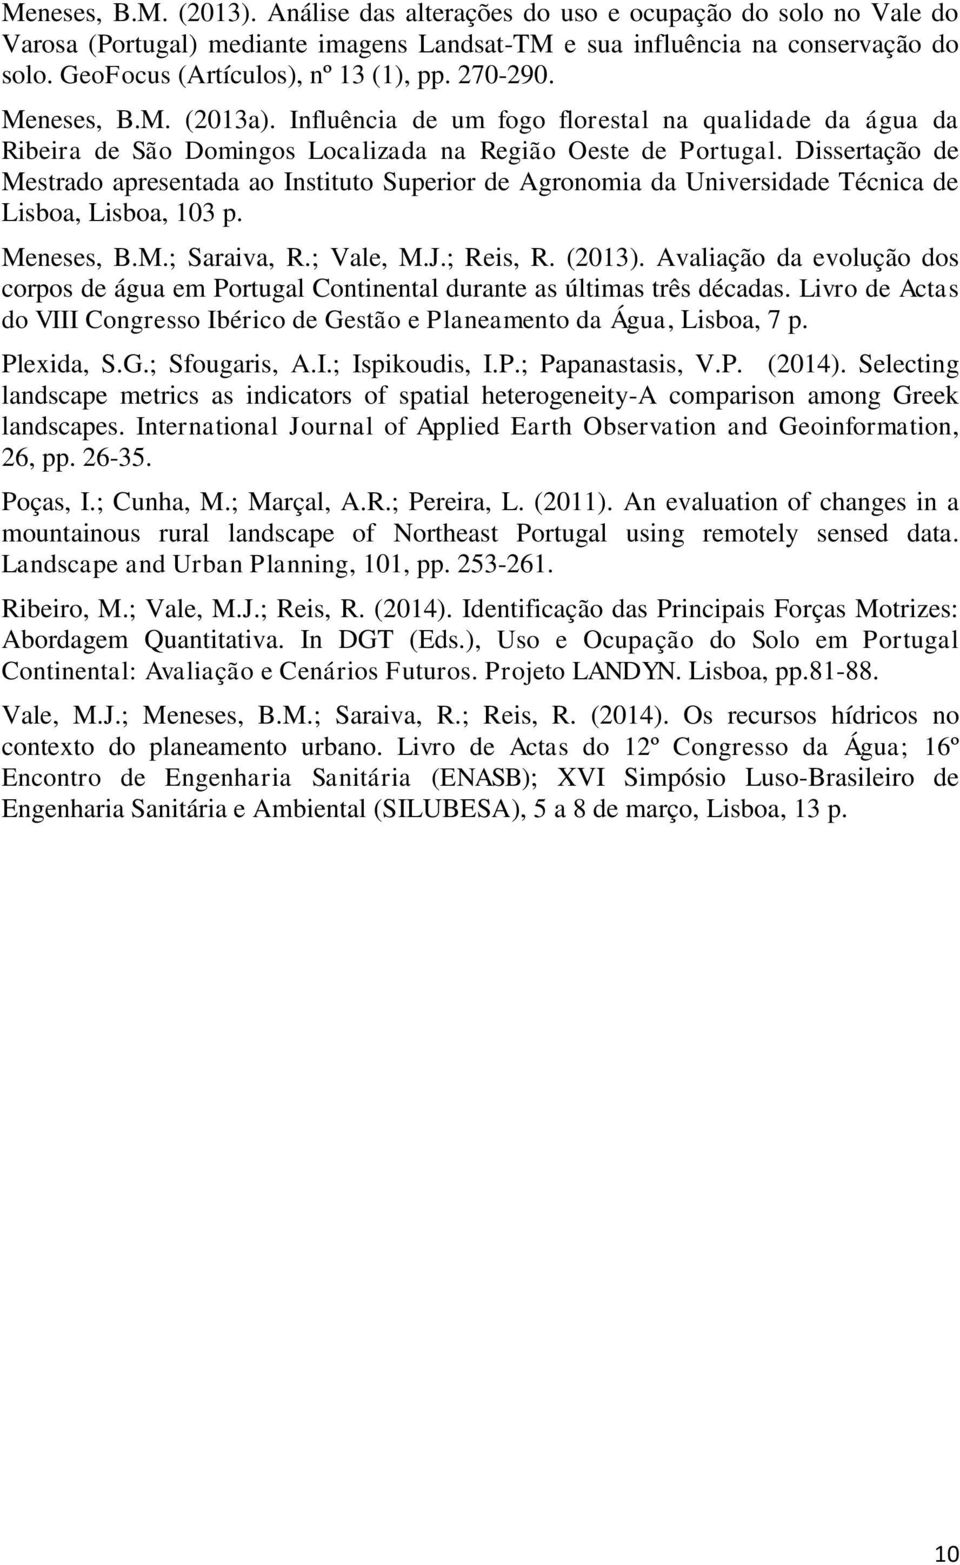 Dissertação de Mestrado apresentada ao Instituto Superior de Agronomia da Universidade Técnica de Lisboa, Lisboa, 103 p. Meneses, B.M.; Saraiva, R.; Vale, M.J.; Reis, R. (2013).